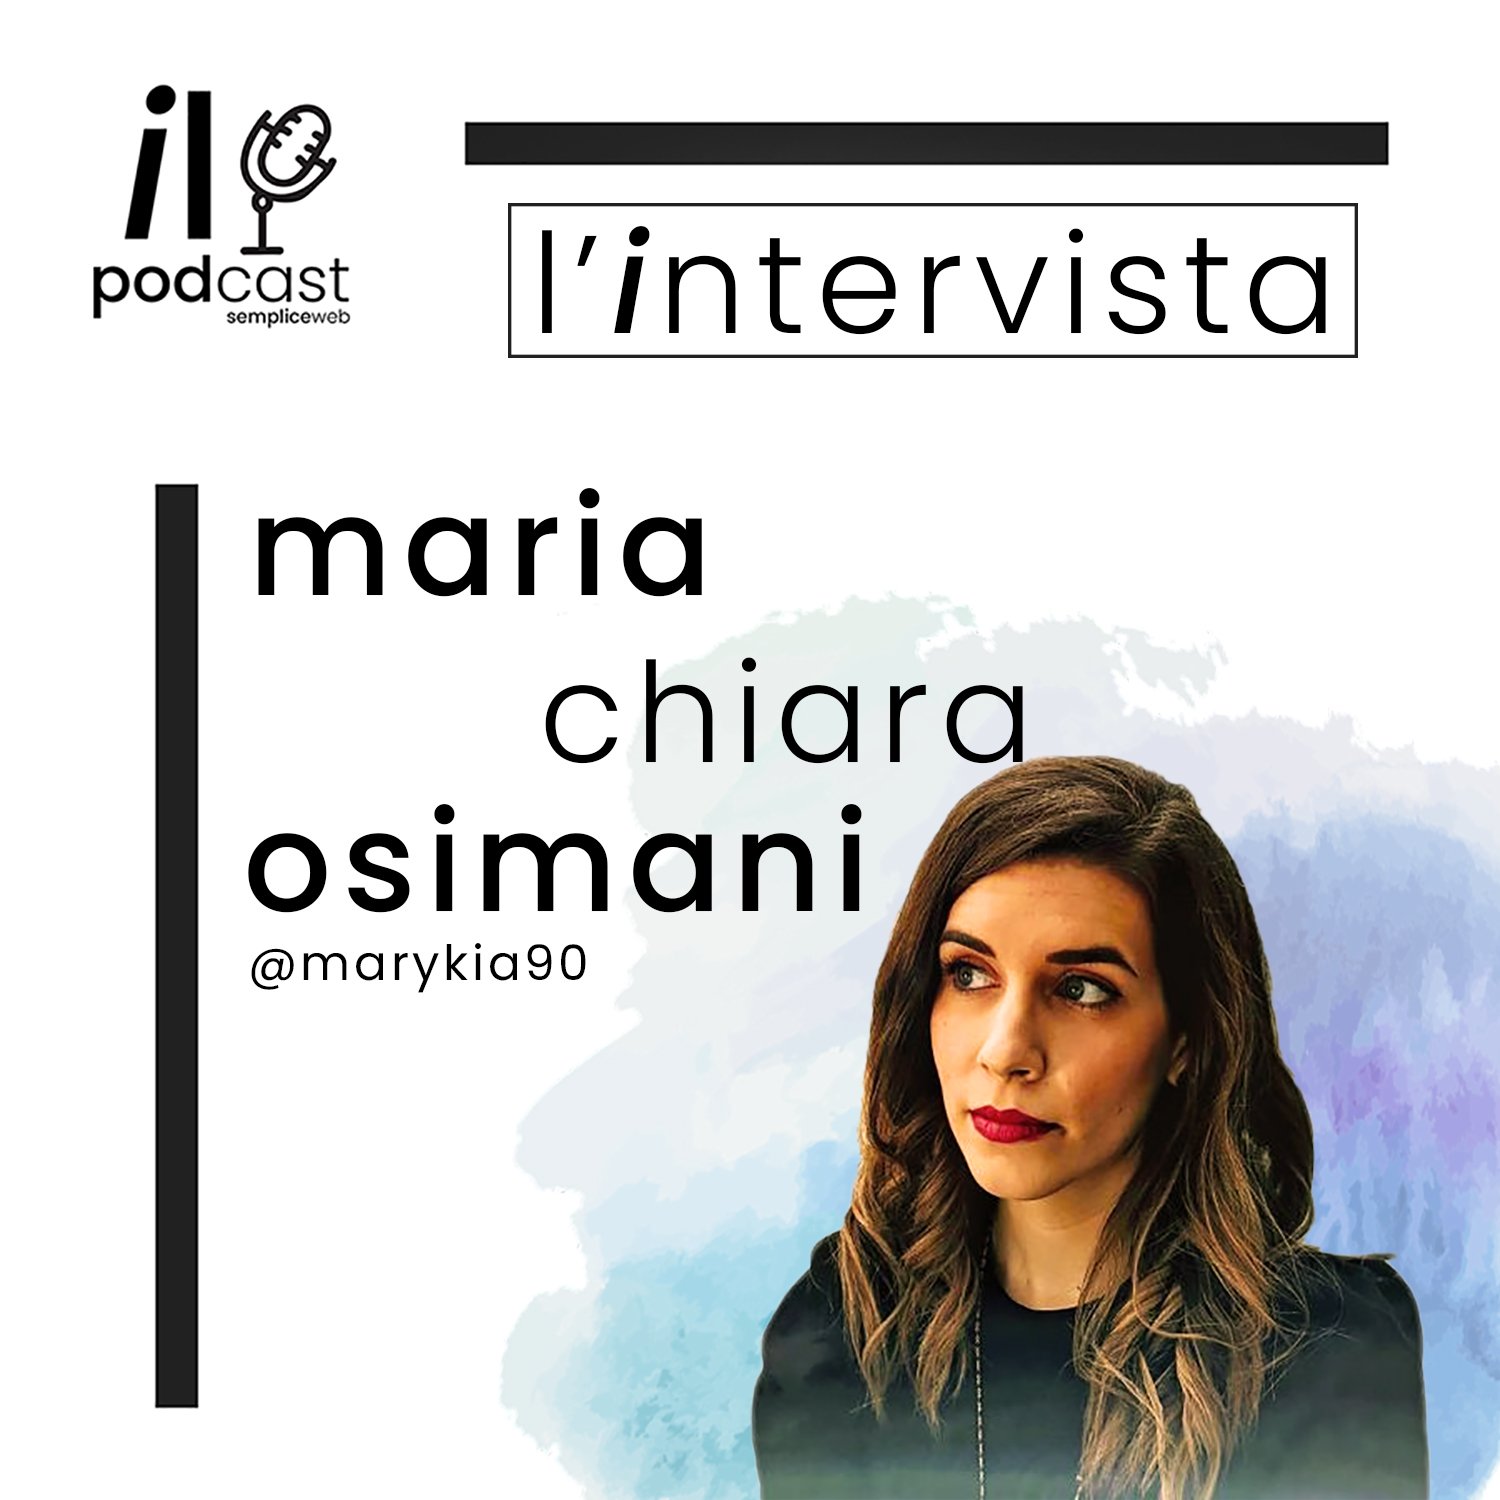 Maria Chiara Osimani podcast intervista